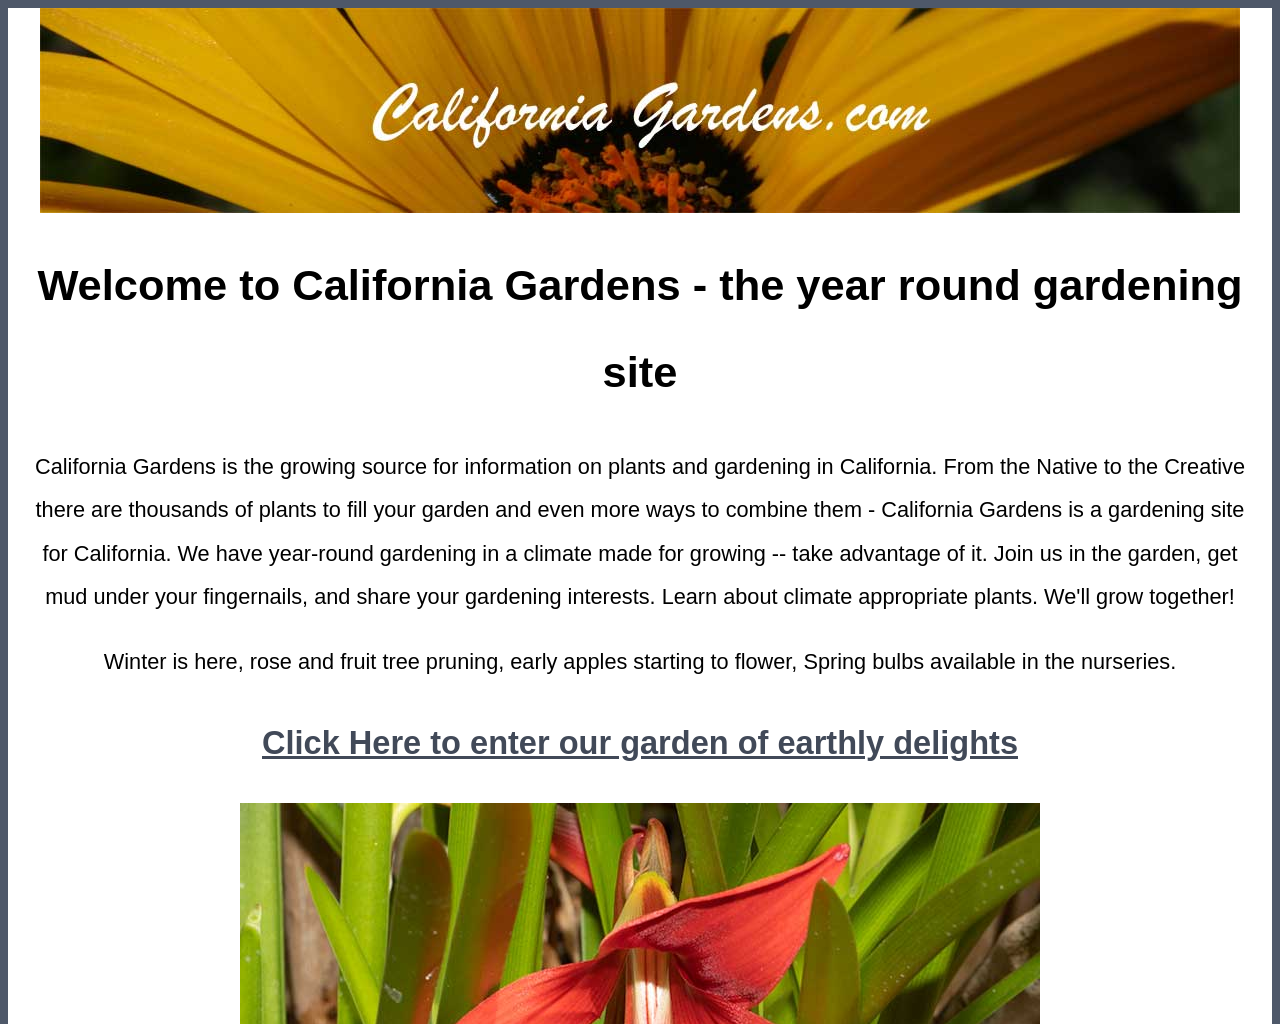 californiagardens.com